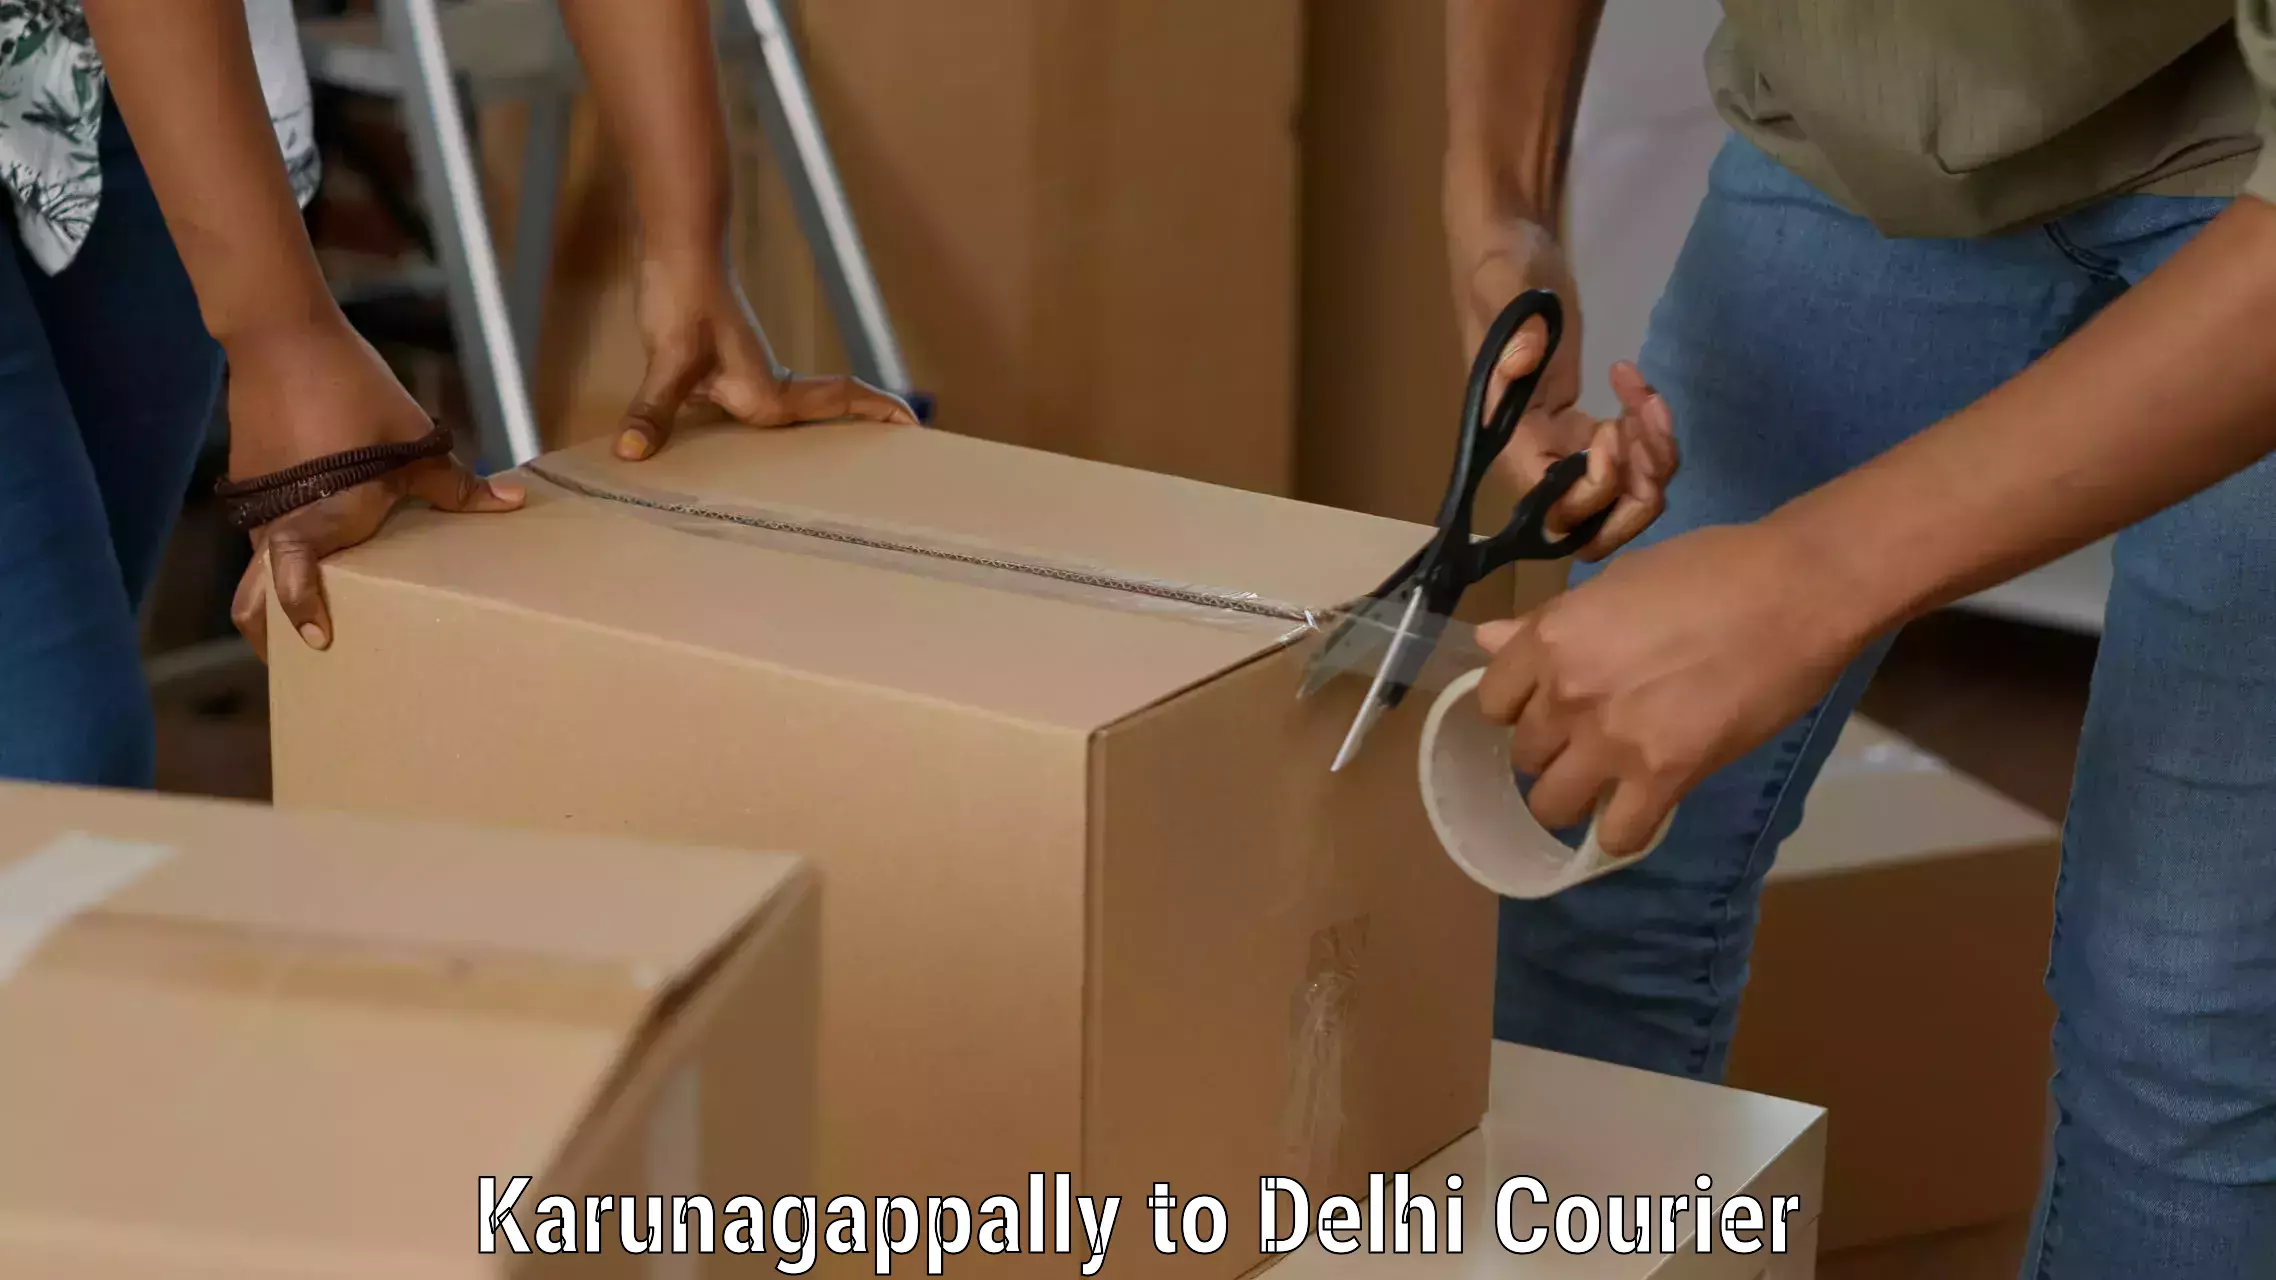 24/7 courier service Karunagappally to NIT Delhi